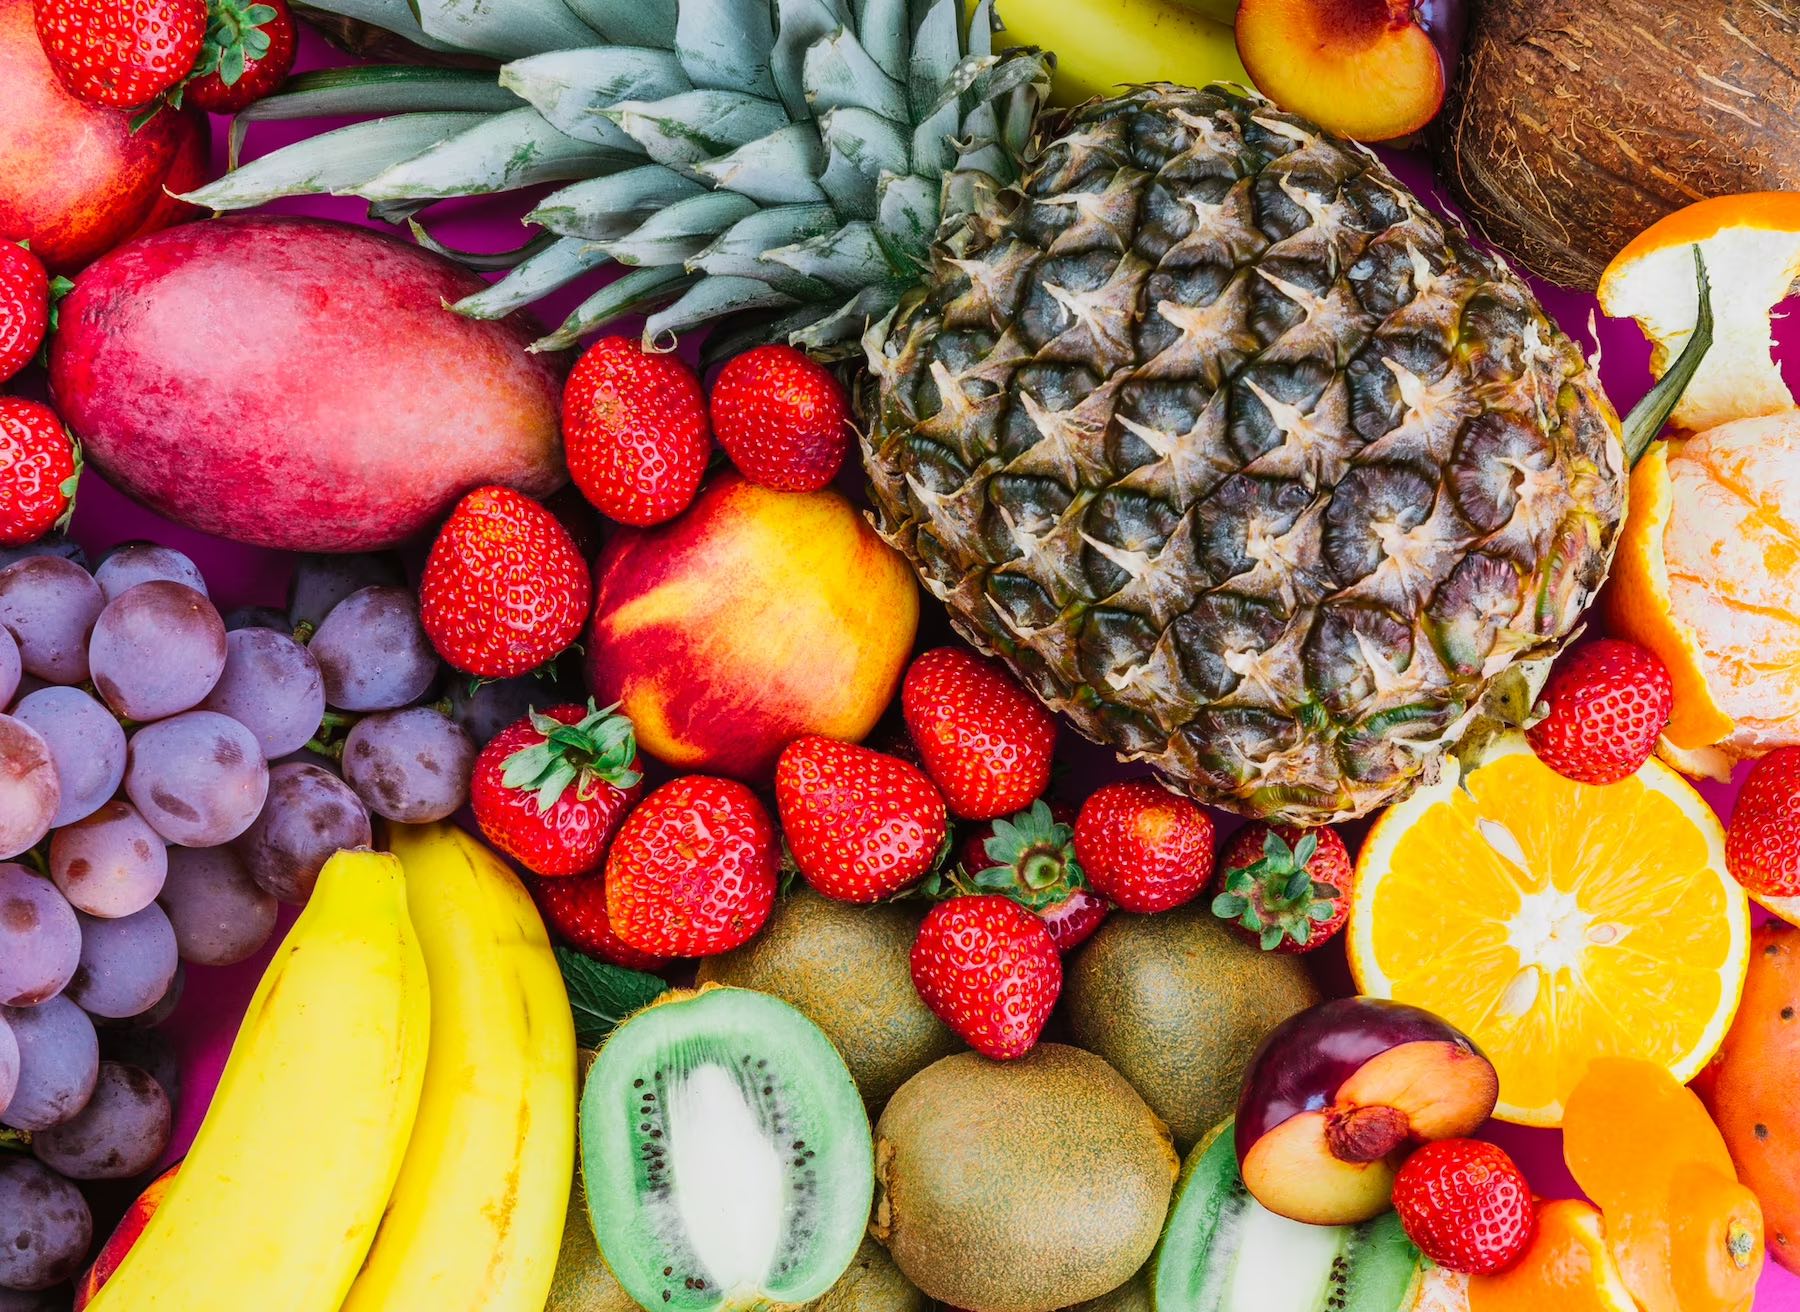 Solleone #10: Perché preferire la frutta di stagione?